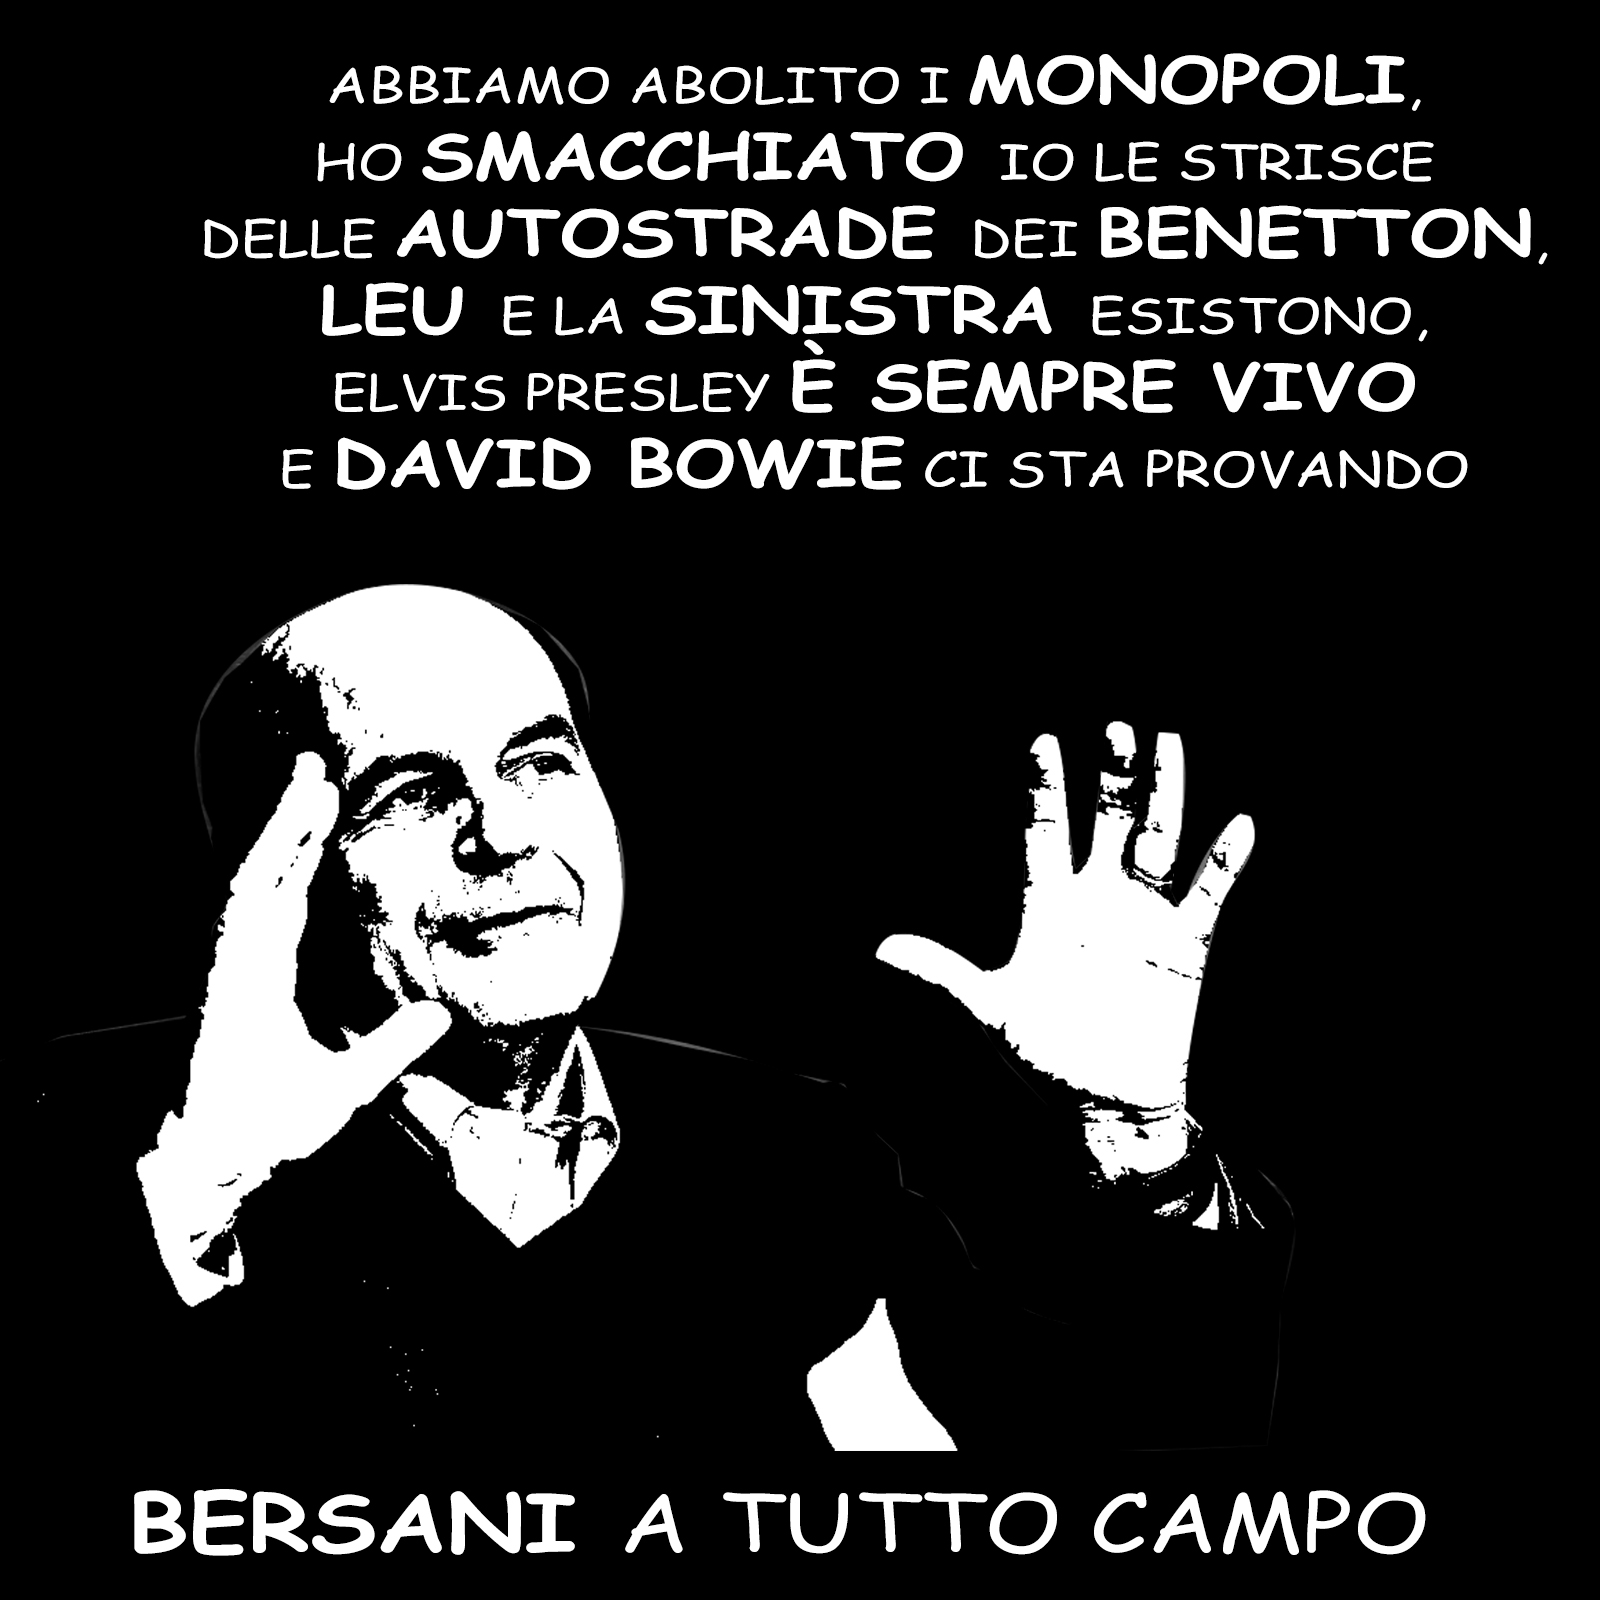 Pierluigi Bersani rivendica i meriti del centrosinistra